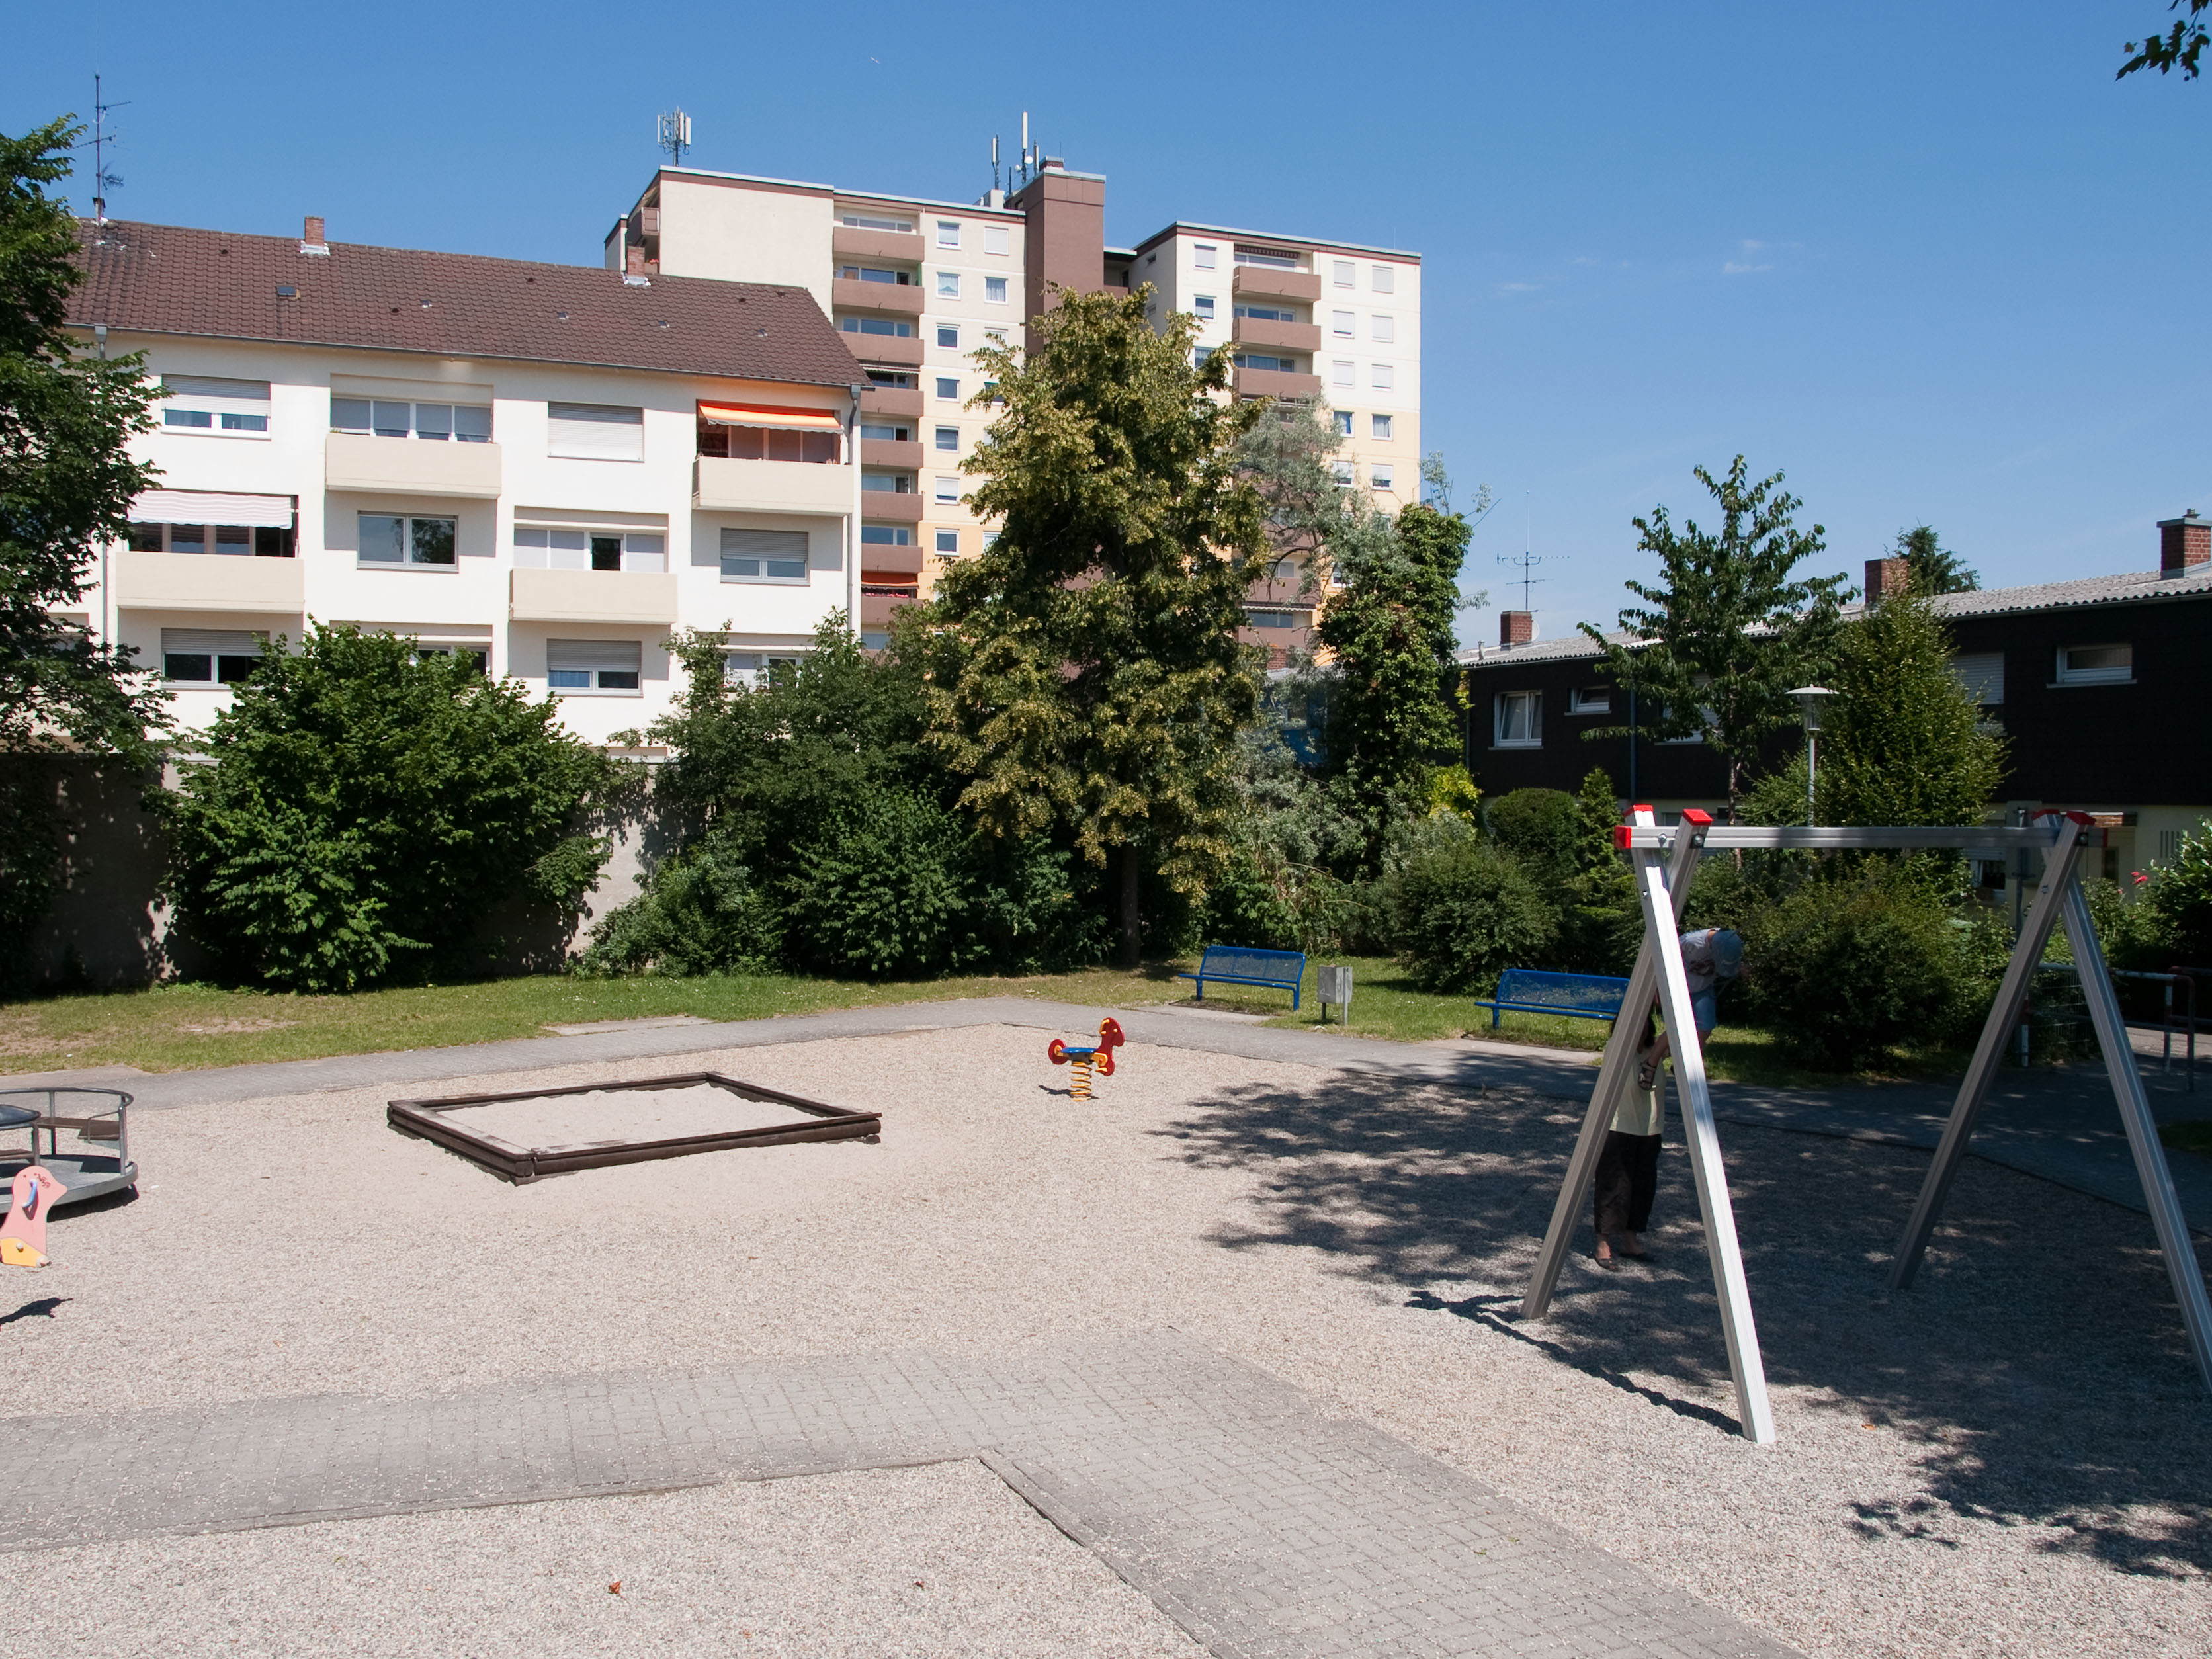 Datei:Spielplatz Grenzhöfer Straße Schwetzingen-4.jpg